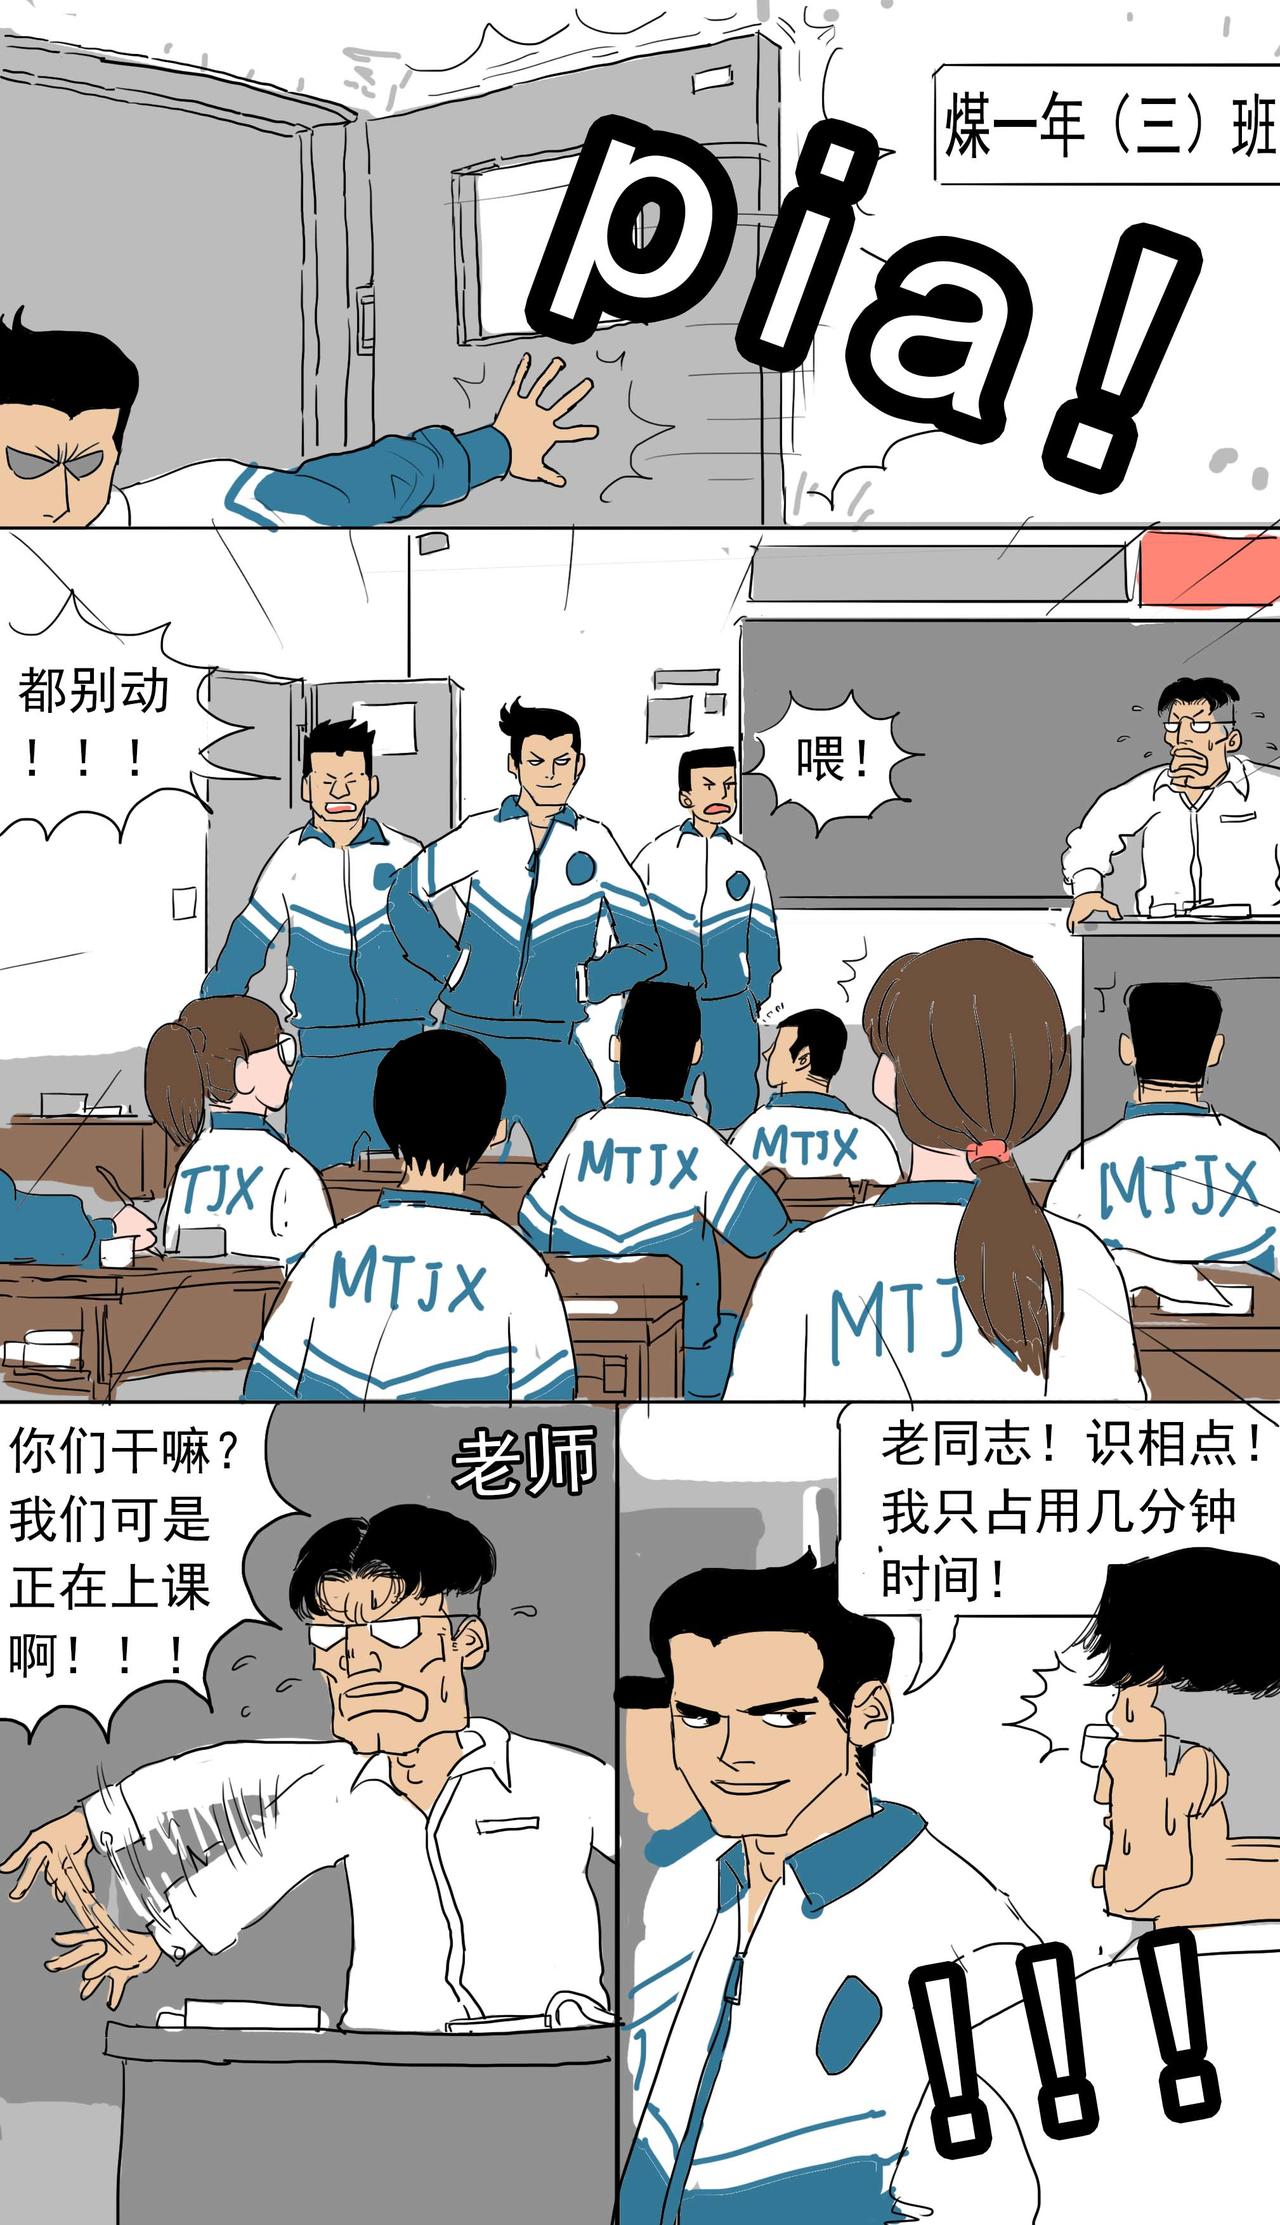 MTJX! - 2高富帥 - 1